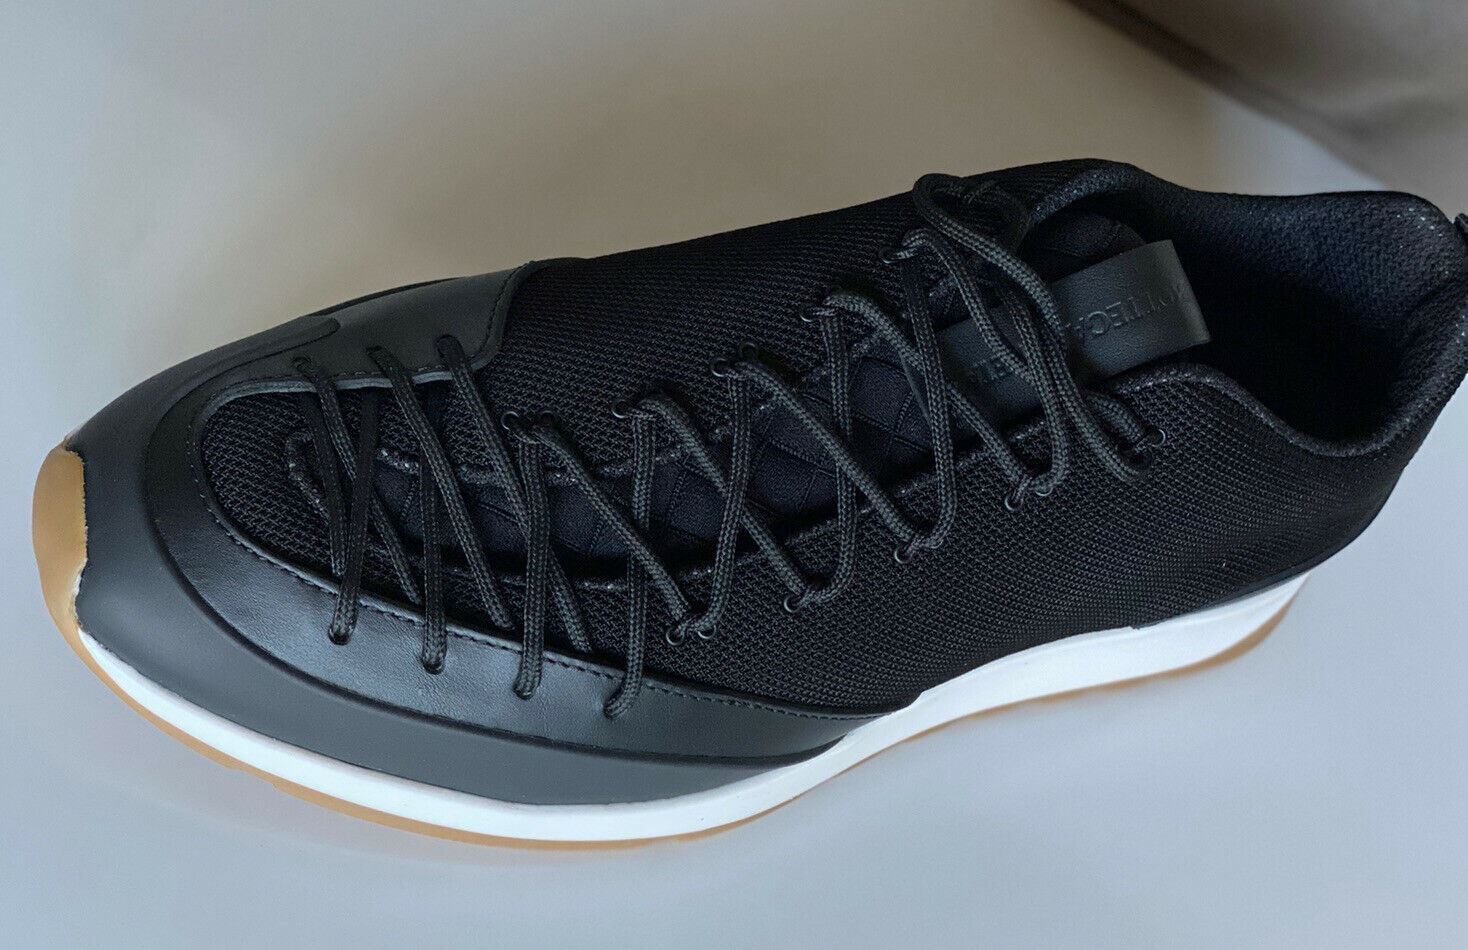 NIB $790 Bottega Veneta Men's Scar Tex Black Sneakers 8.5 US (41.5  Euro) 609891